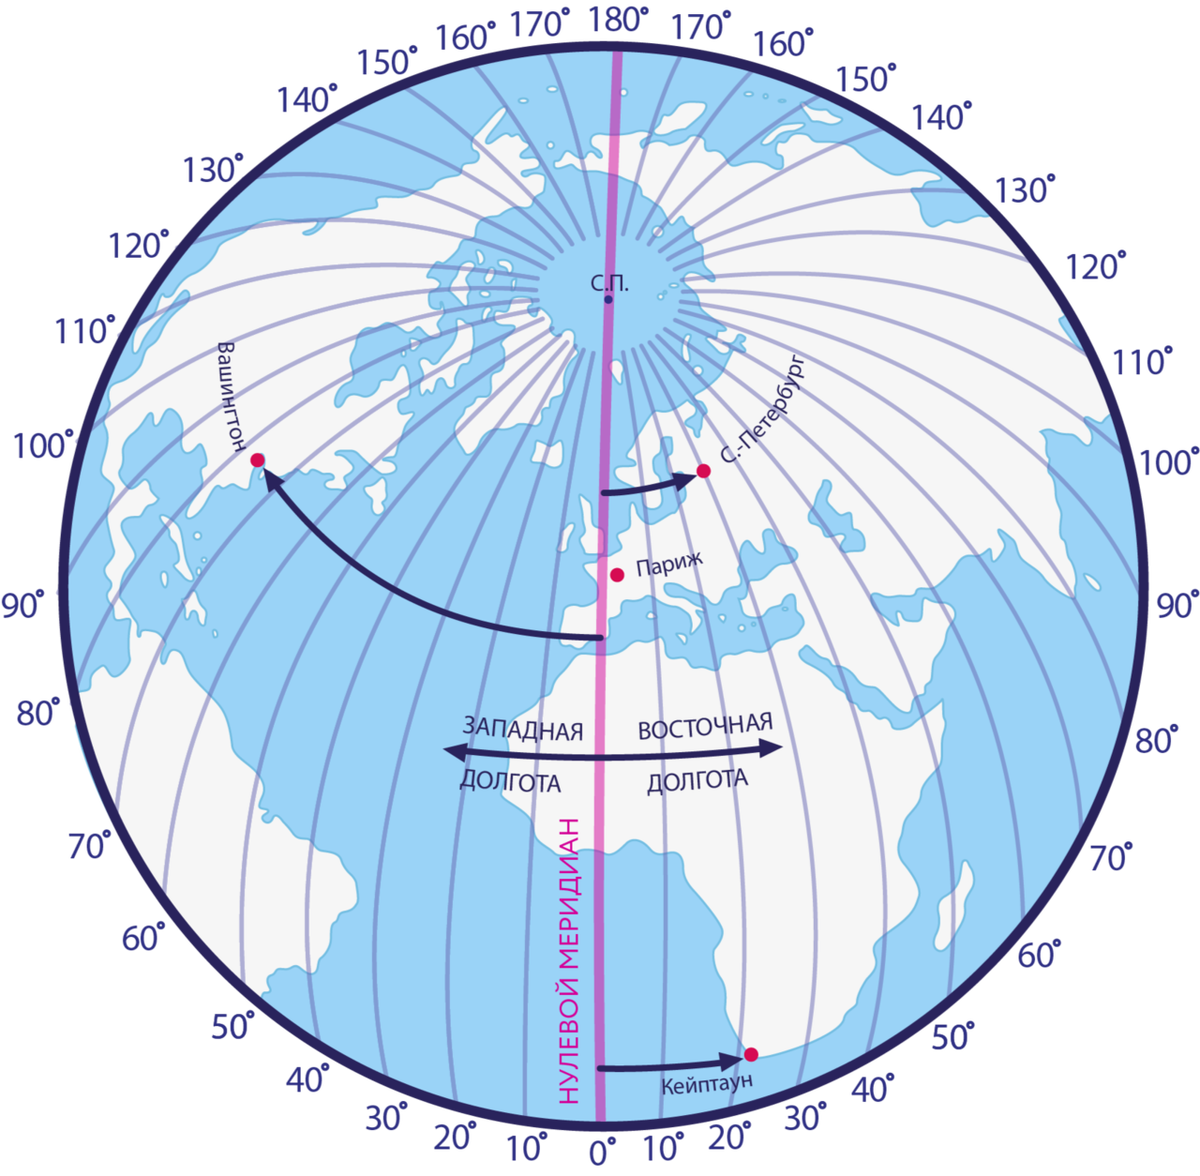 Африка по отношению 0 и 180 долготы. Экватор Гринвичский Меридиан Меридиан 180 градусов. Нулевой Меридиан и 180 Меридиан. Нулевой Меридиан на карте. Нулевой и 180 Меридиан на карте.